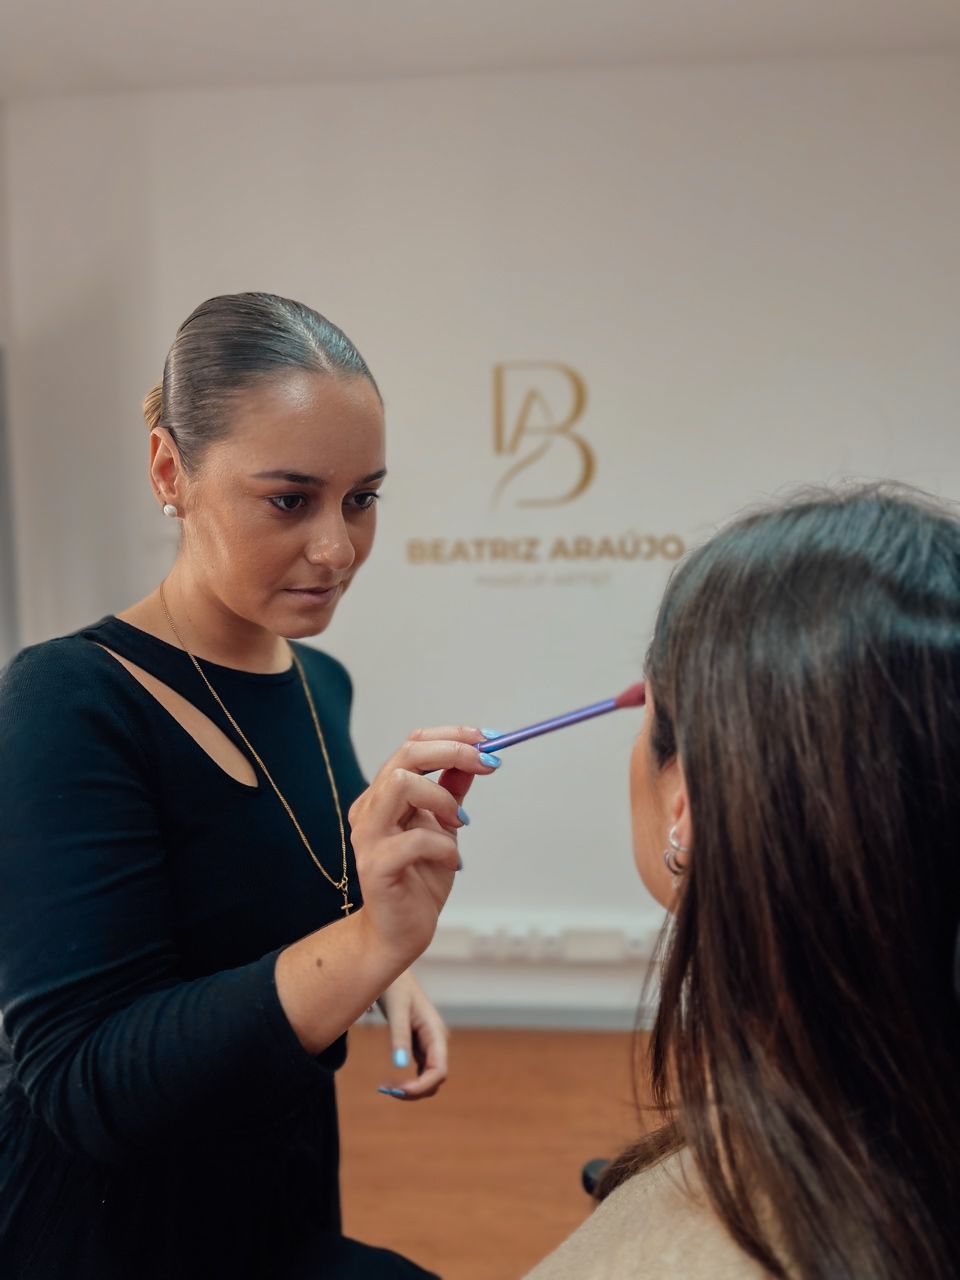 Beatriz Araújo Makeup Artist - Santo Tirso - Cabeleireiros e Maquilhadores